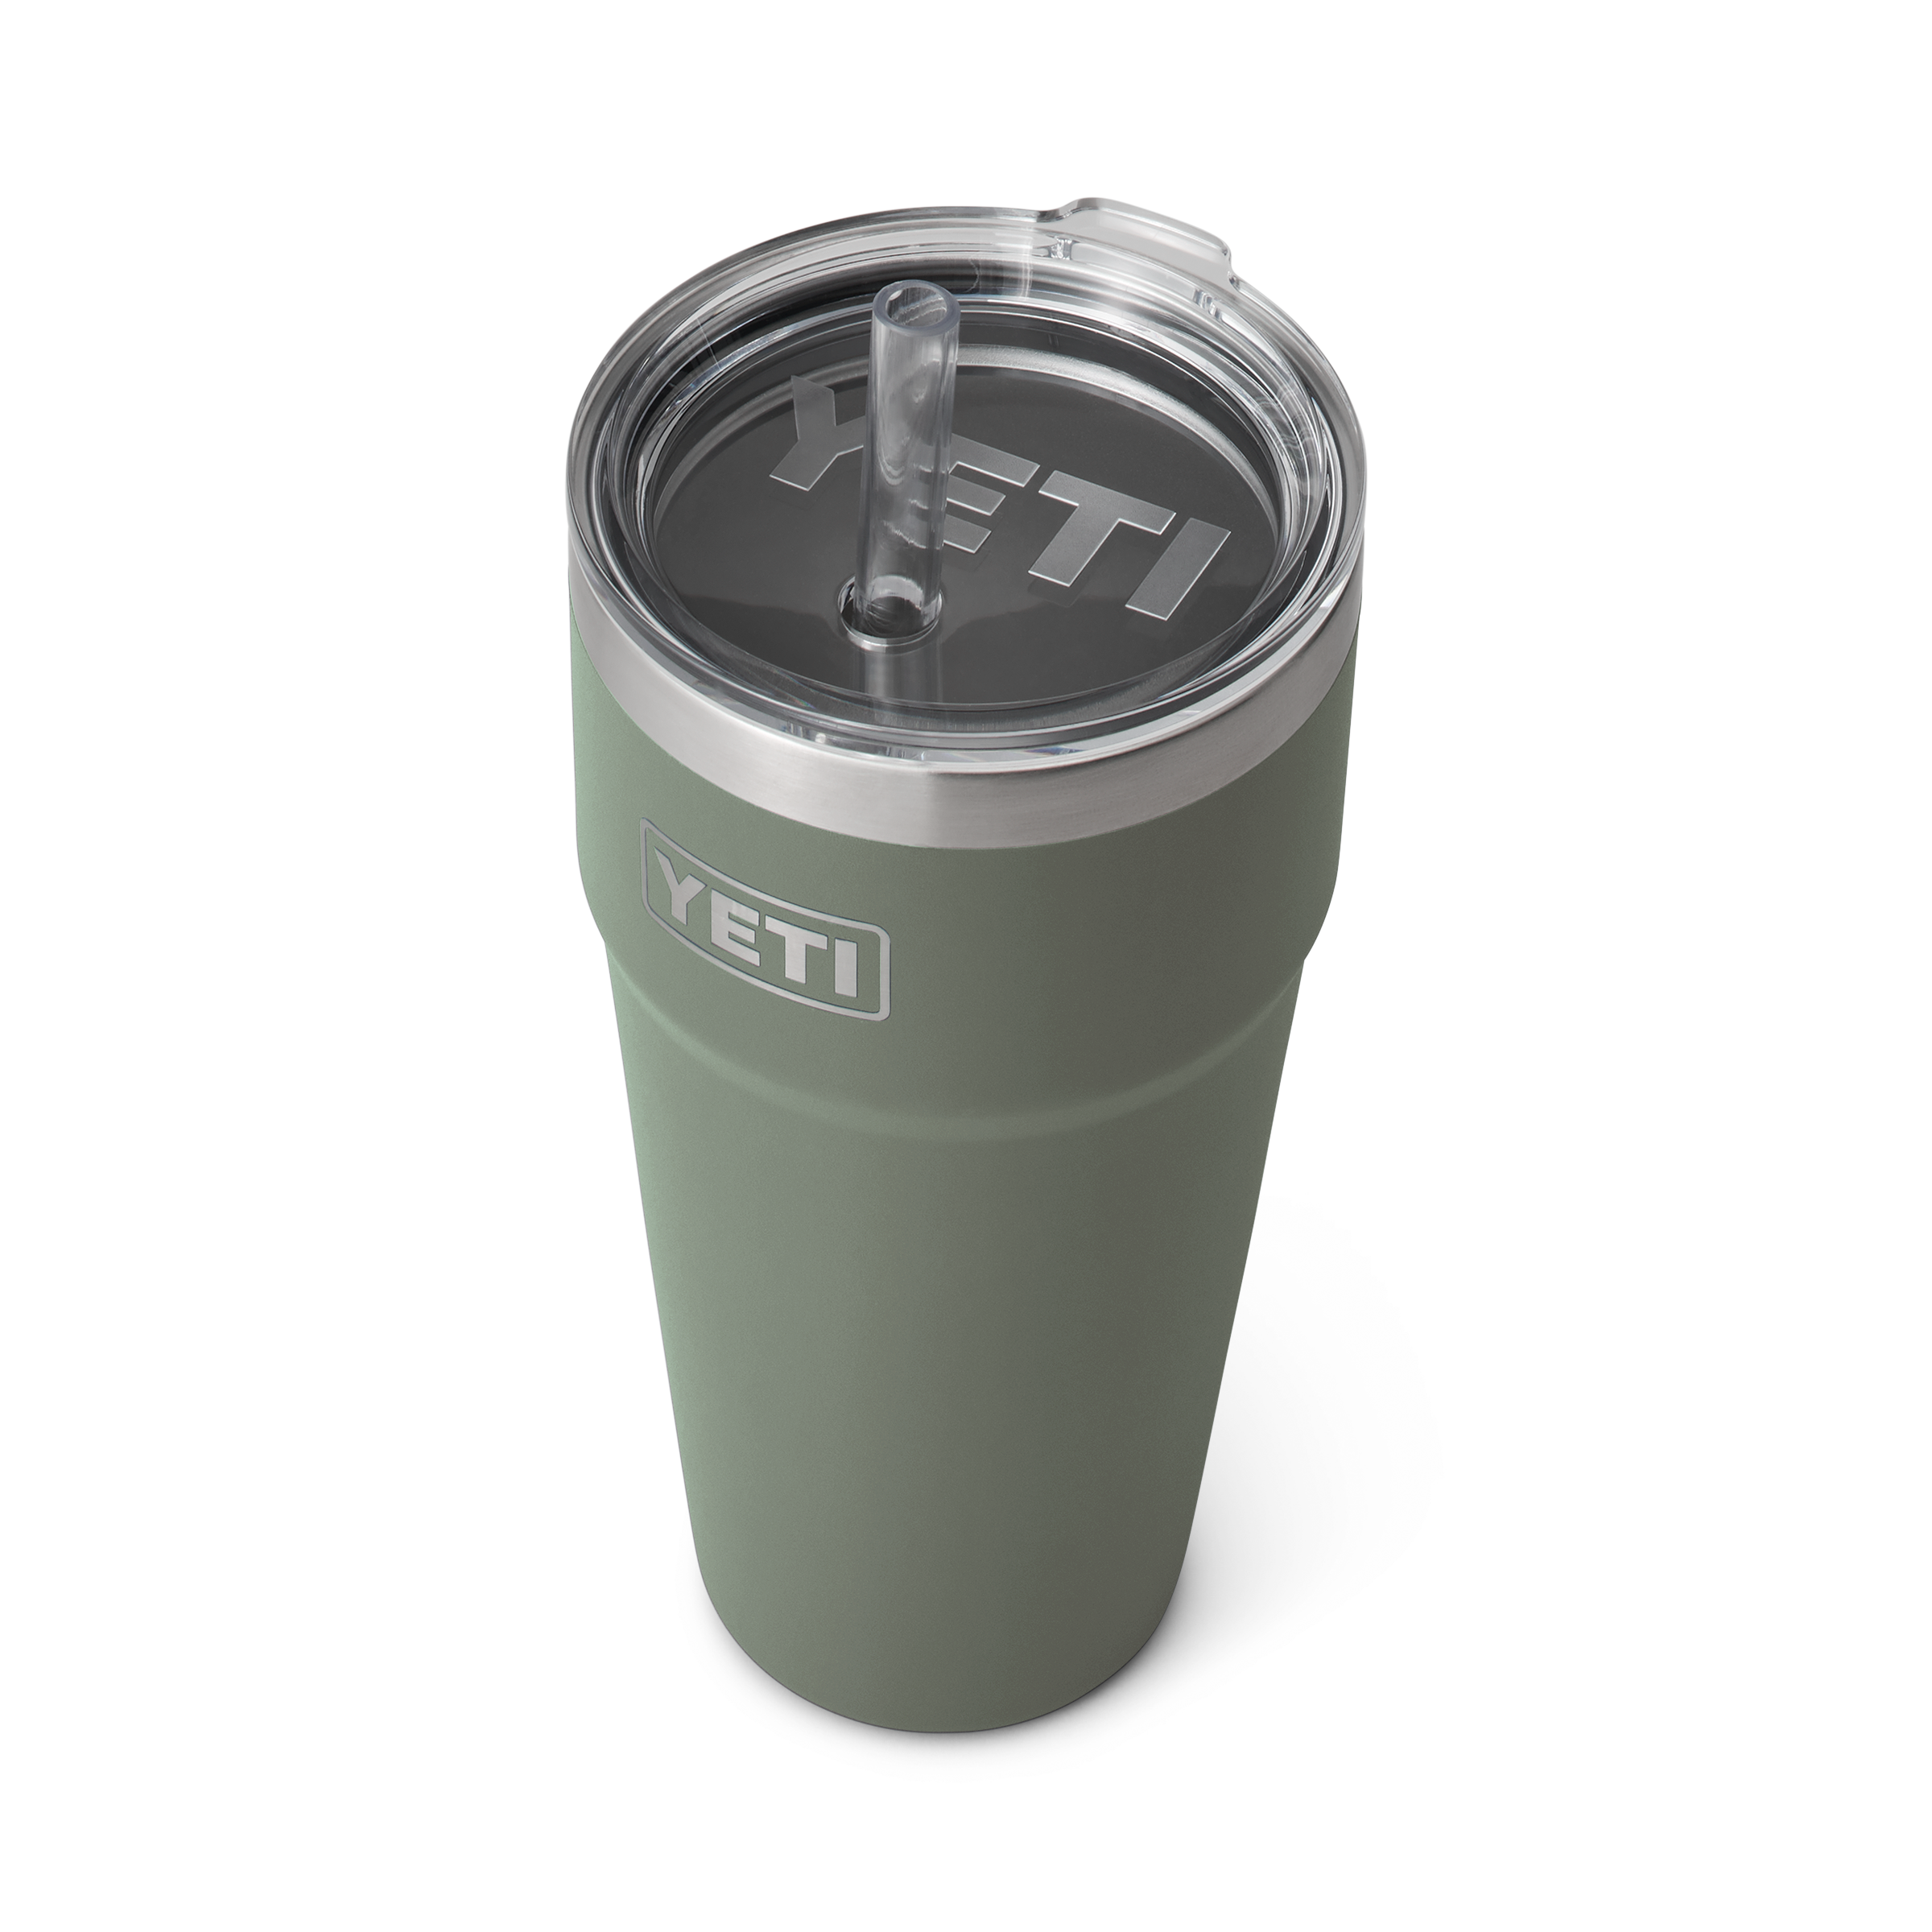 YETI Rambler 25 oz Straw Mug, Vacuum Insulated, Stainless Steel, Camp Green